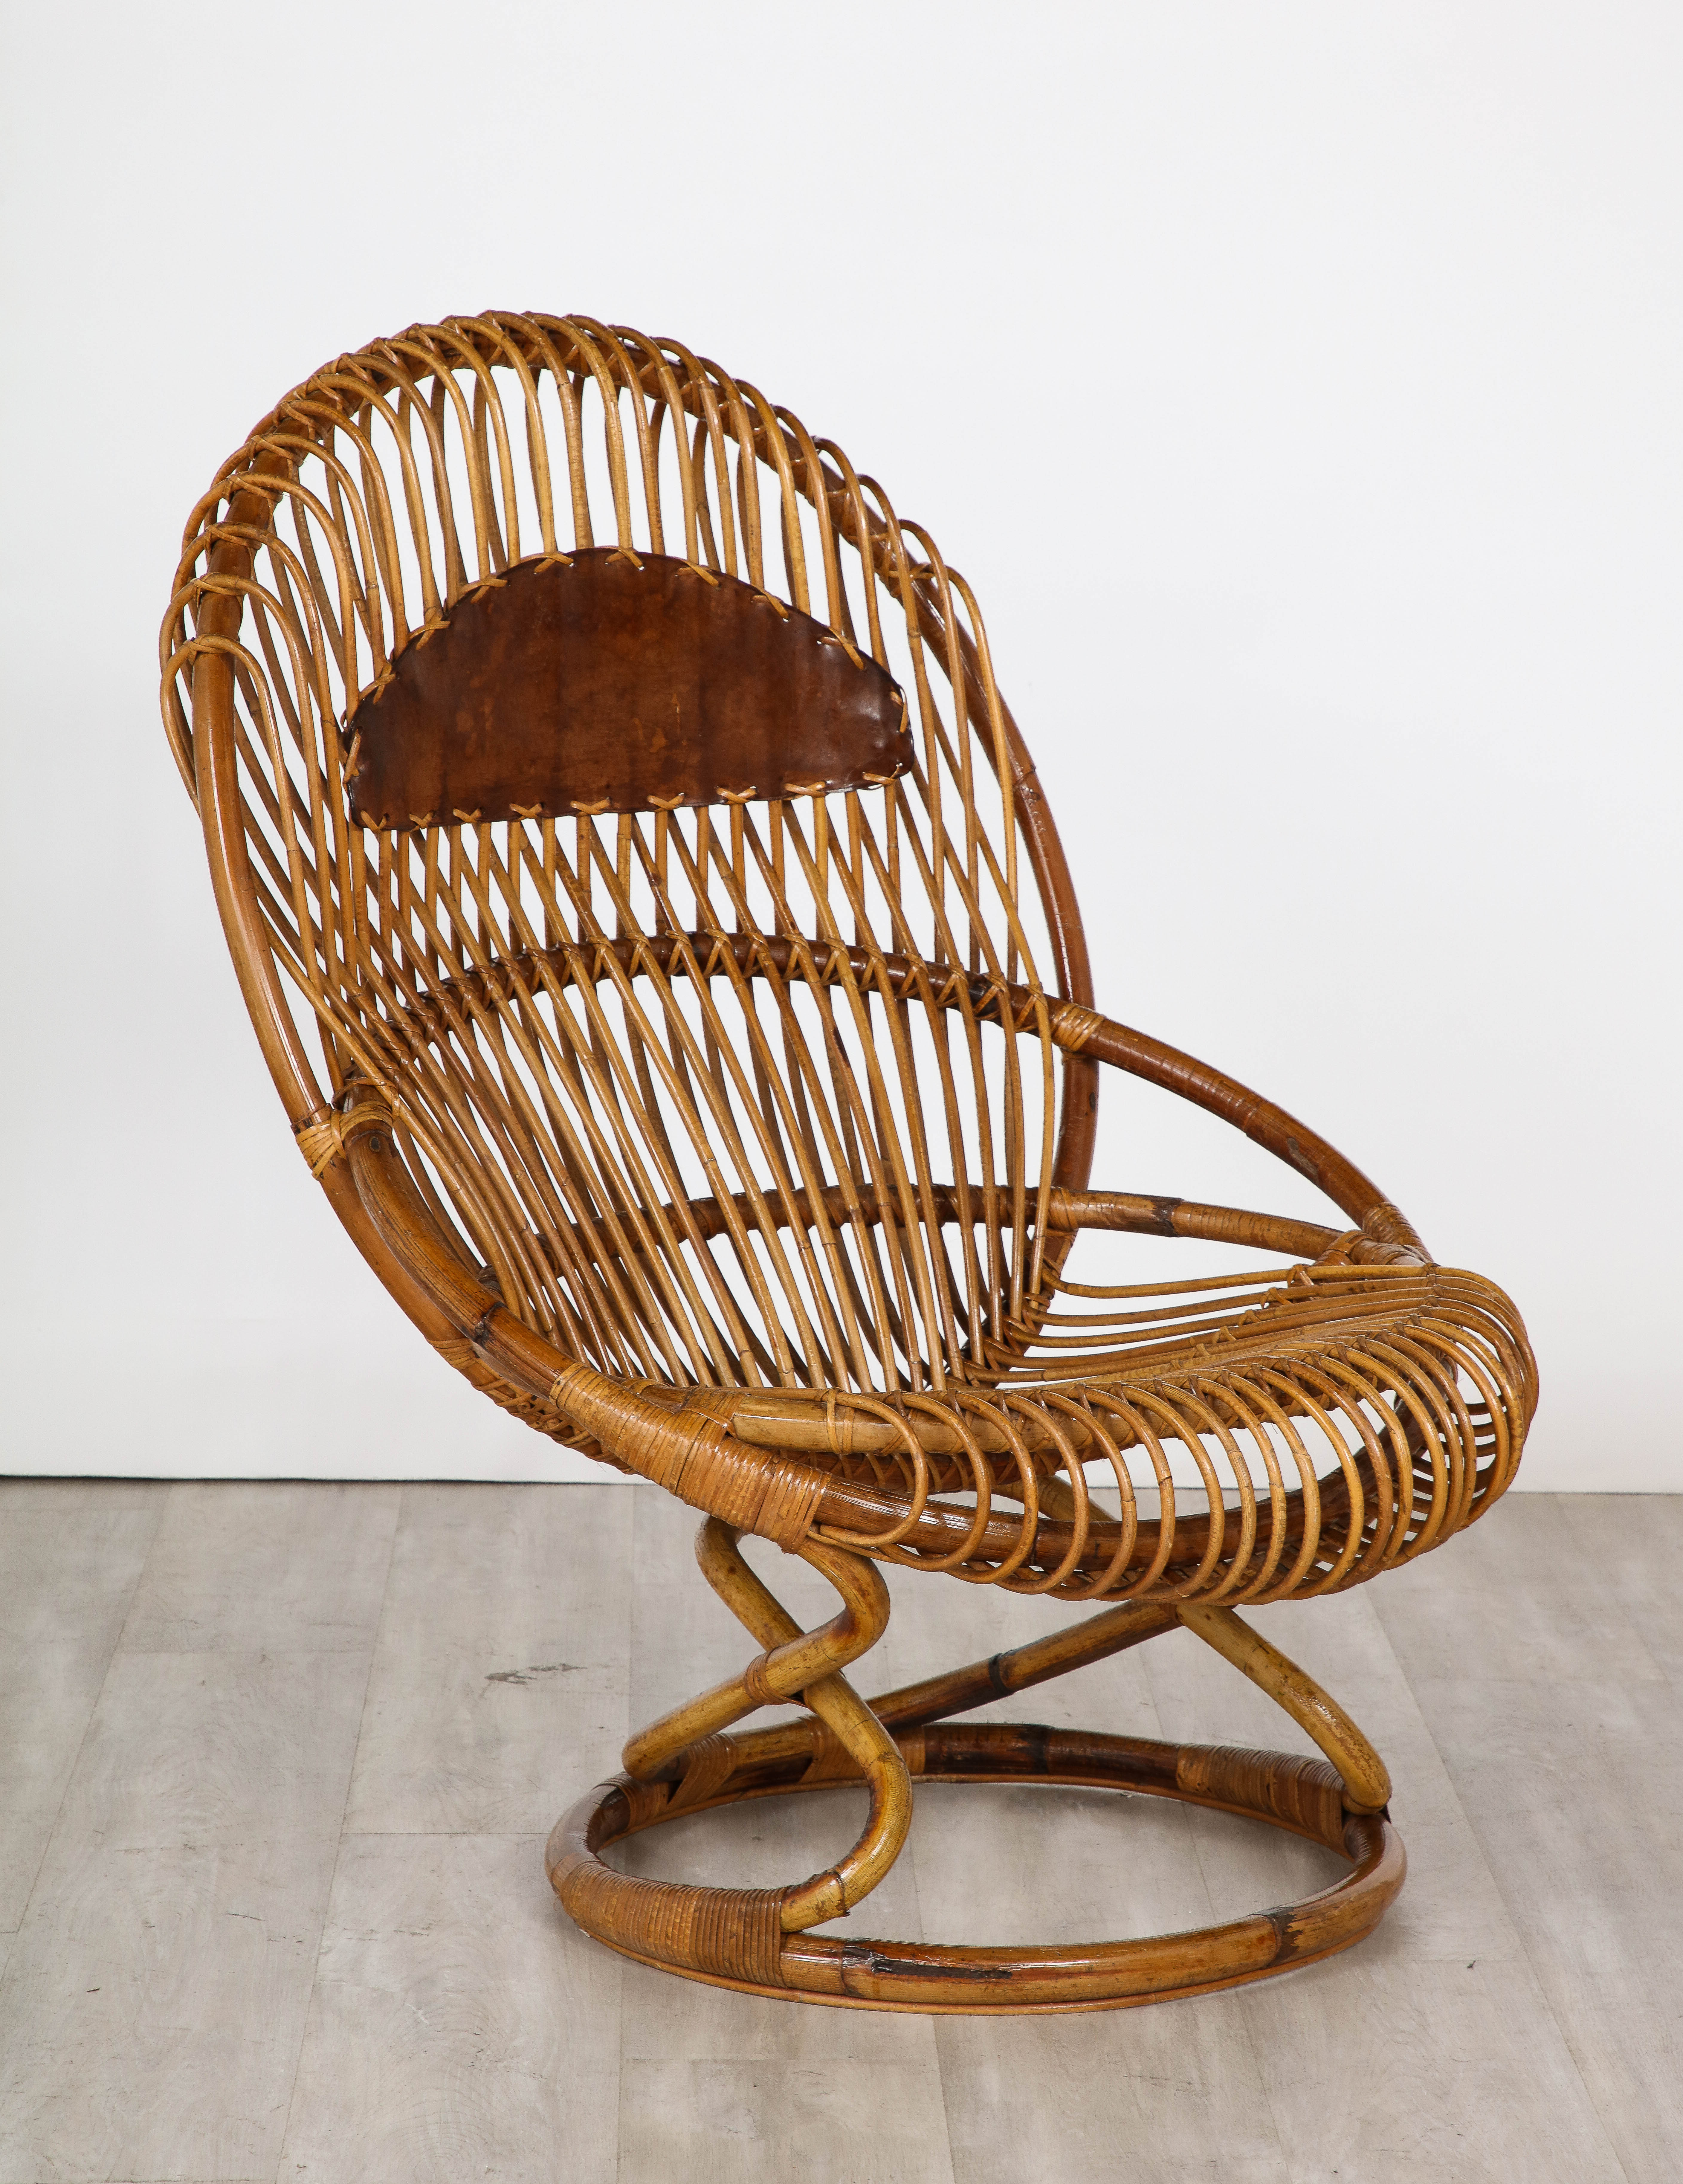 Chaise longue surdimensionnée en rotin et cuir, conçue par Tito Agnoli pour Bonacina dans les années 1950.  Un design très sculptural, mettant en valeur la beauté du bois naturel, la couleur est chaude et belle, le cuir brun caramel sur le dossier